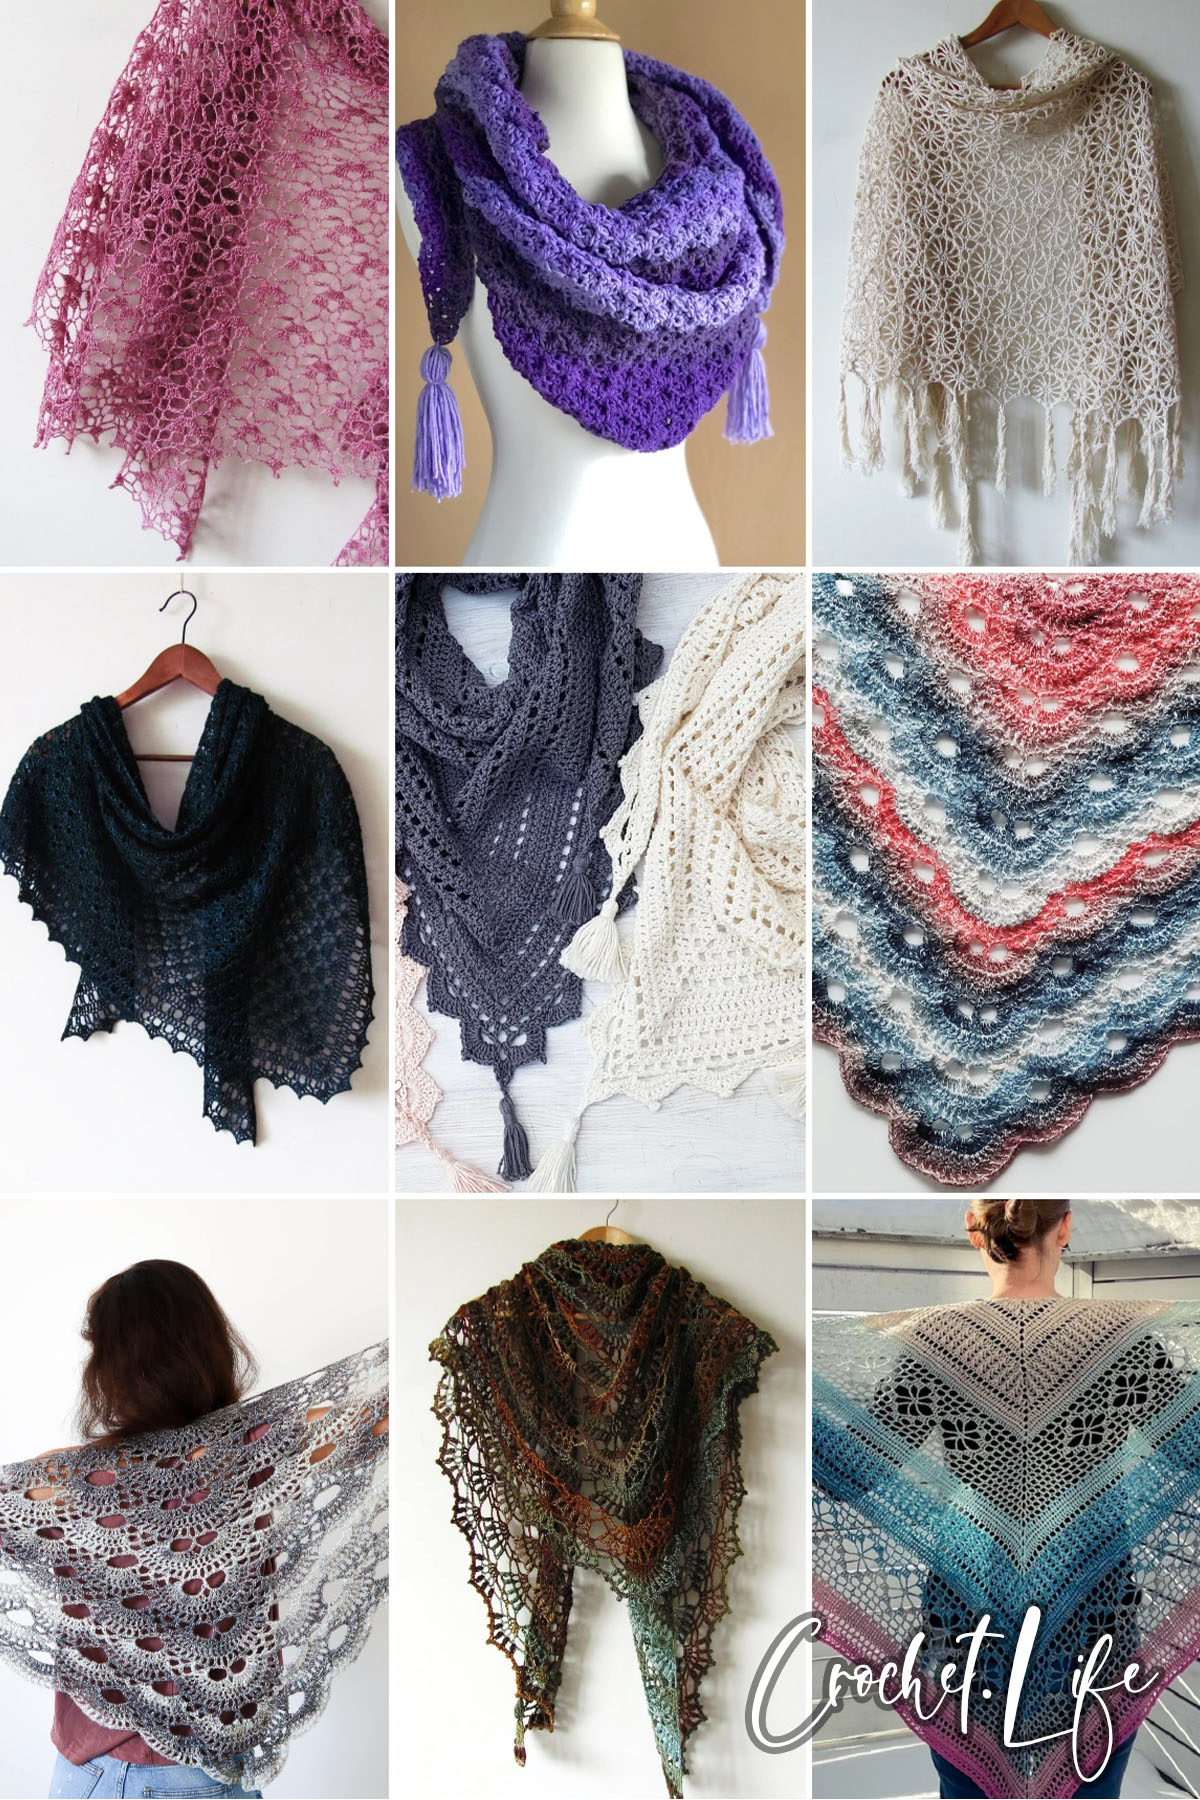 Lacy shawl Virus shawl Crochet Triangle Scarf Large Crochet triangle Shawl Boho crochet shawl Crochet Wrap Bohemian shawl